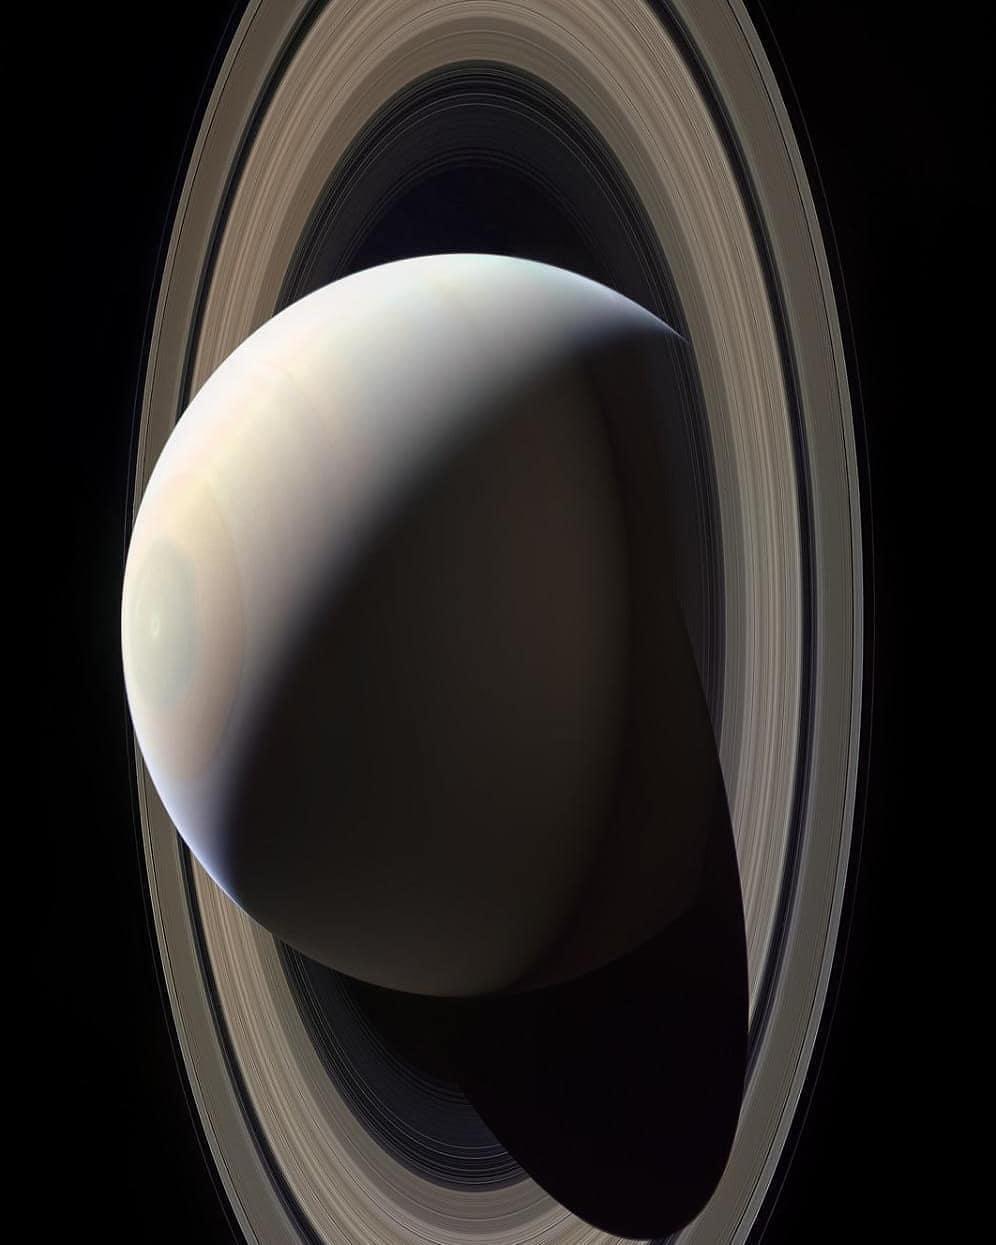  卡西尼号探测器拍摄的土星。 